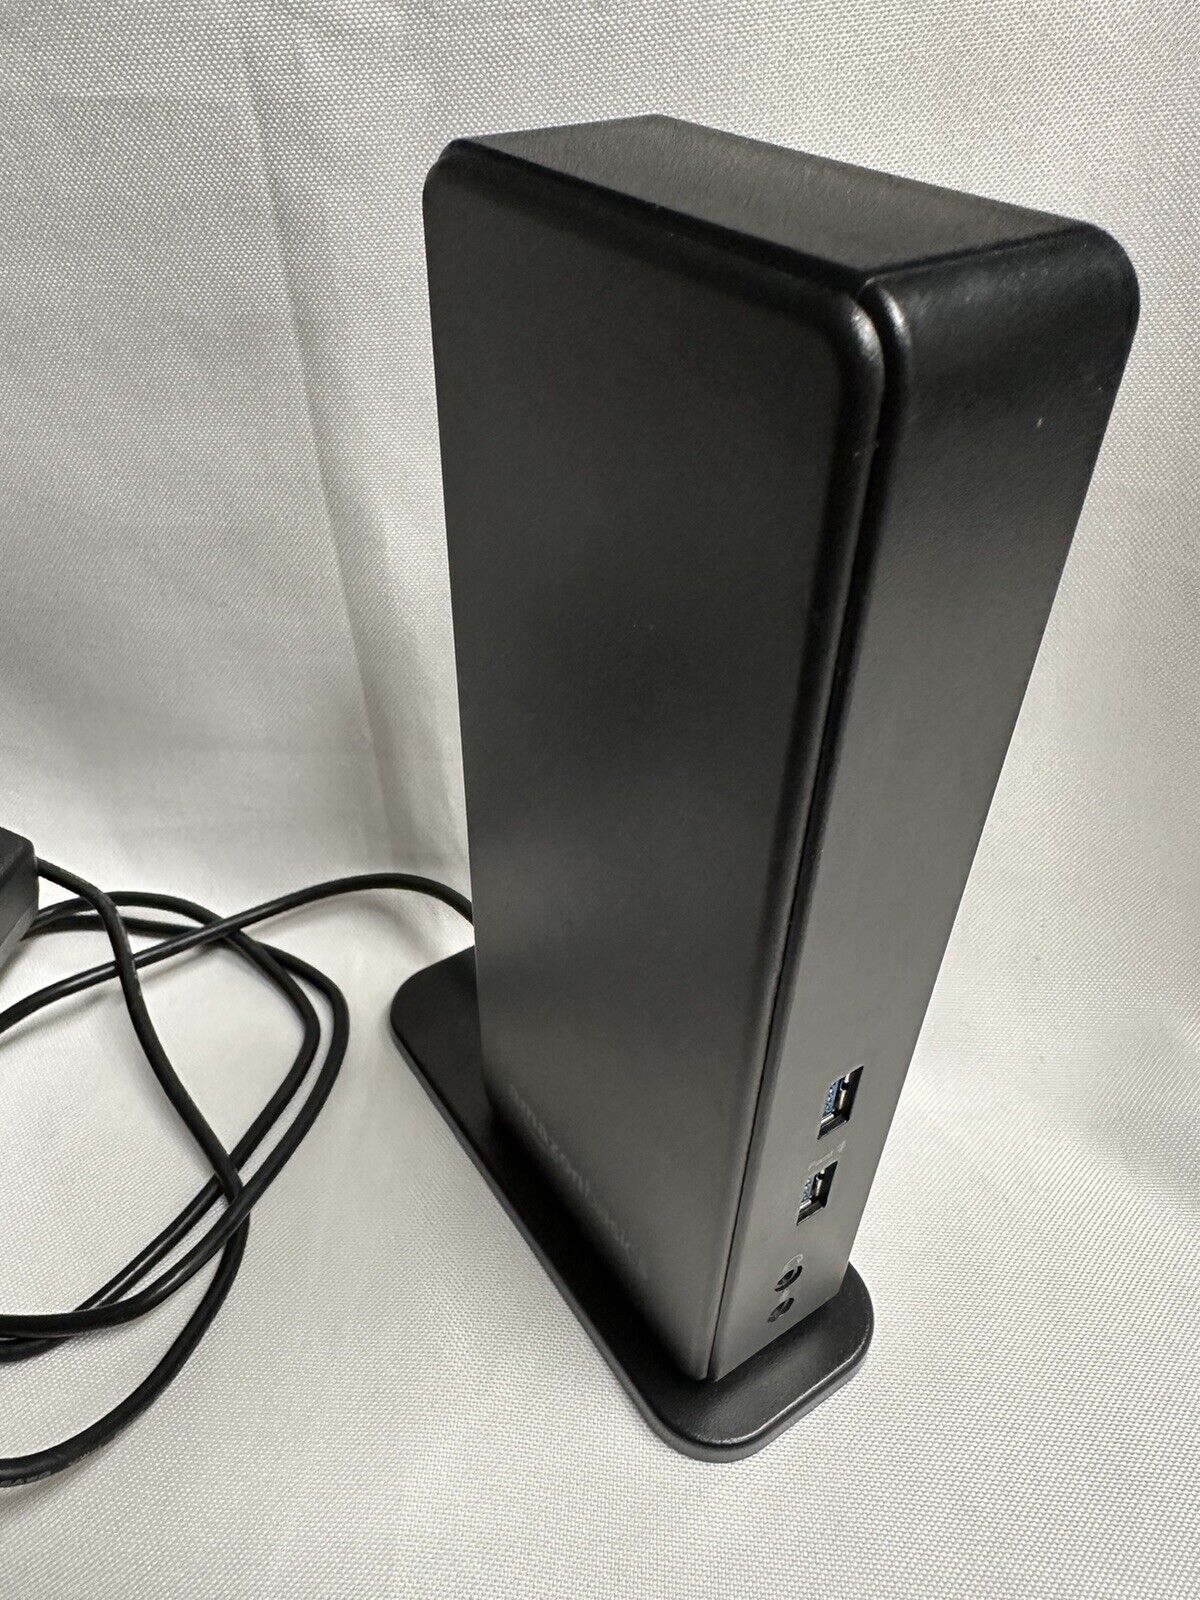 Amazon Basics USB 3.0 Universal Laptop Dual Monitor Docking Station SEALED BOX